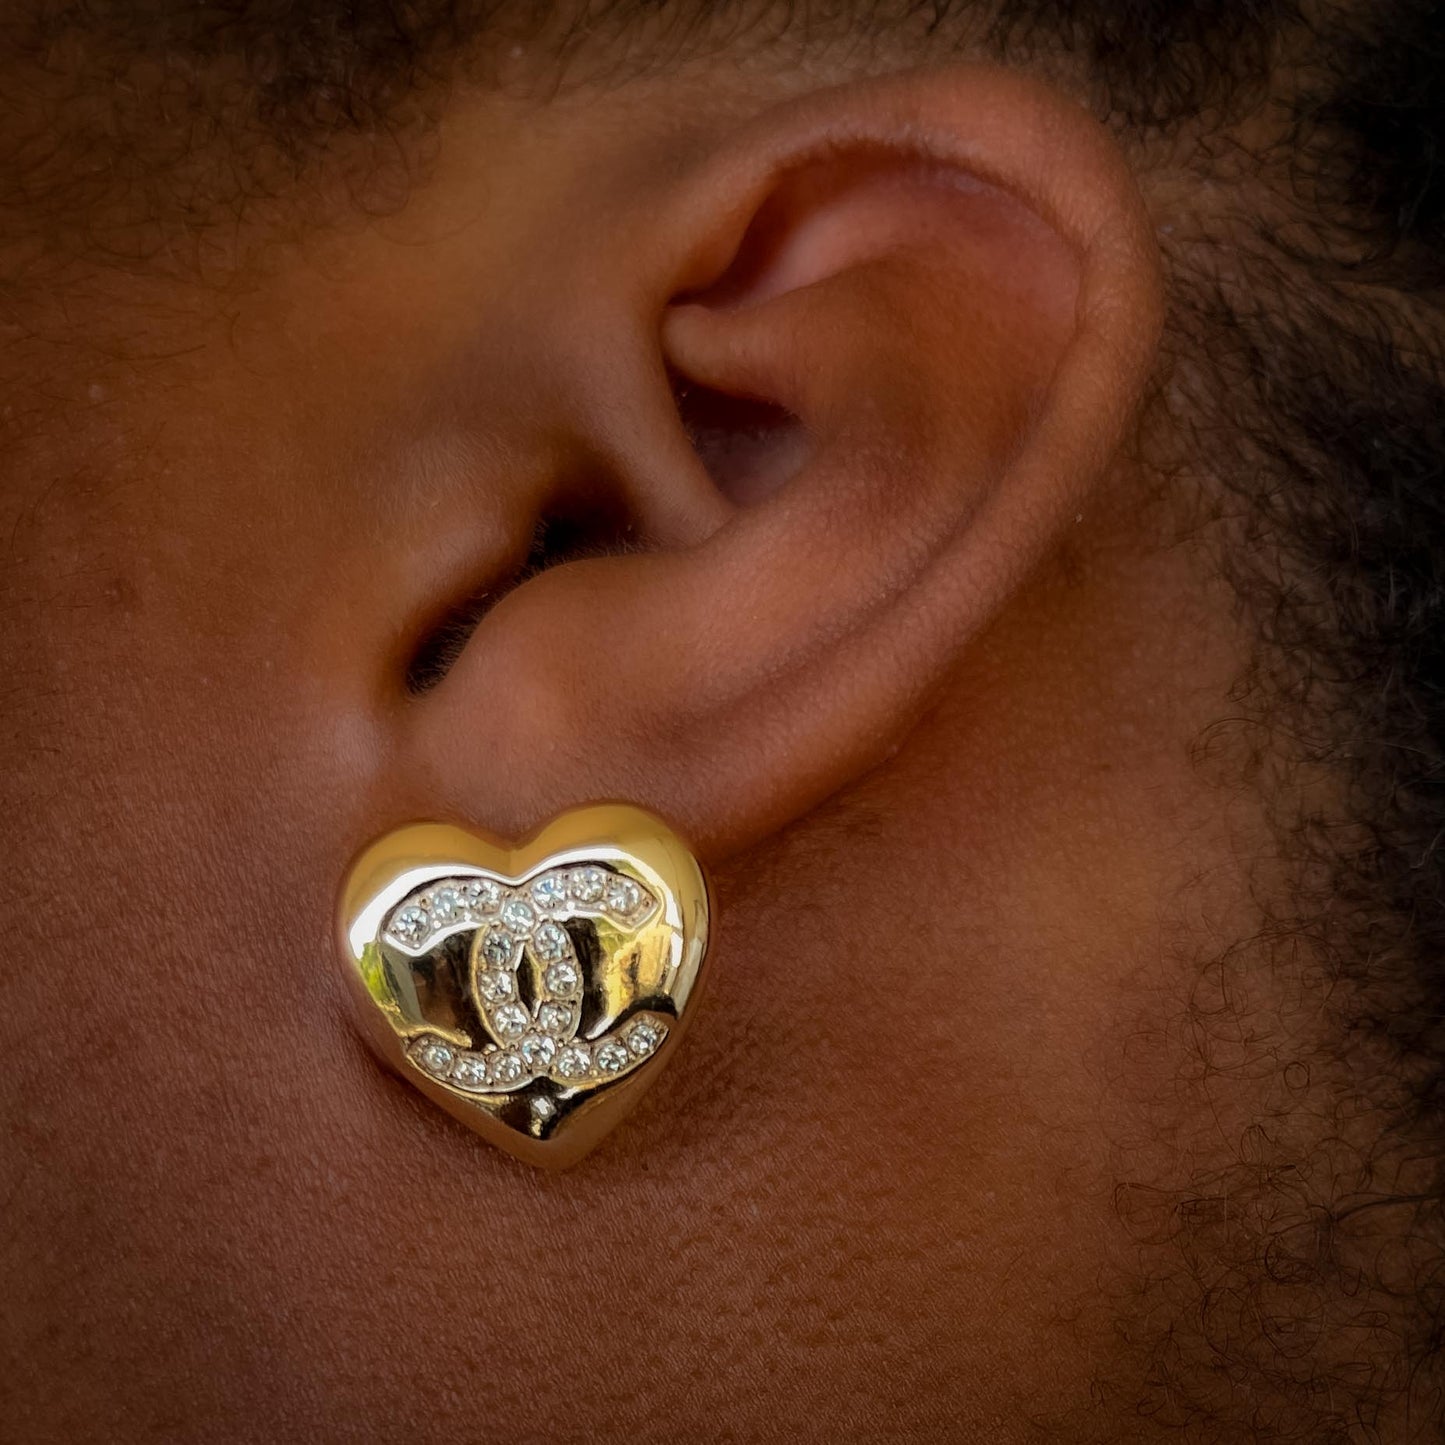 Charming Heart earrings